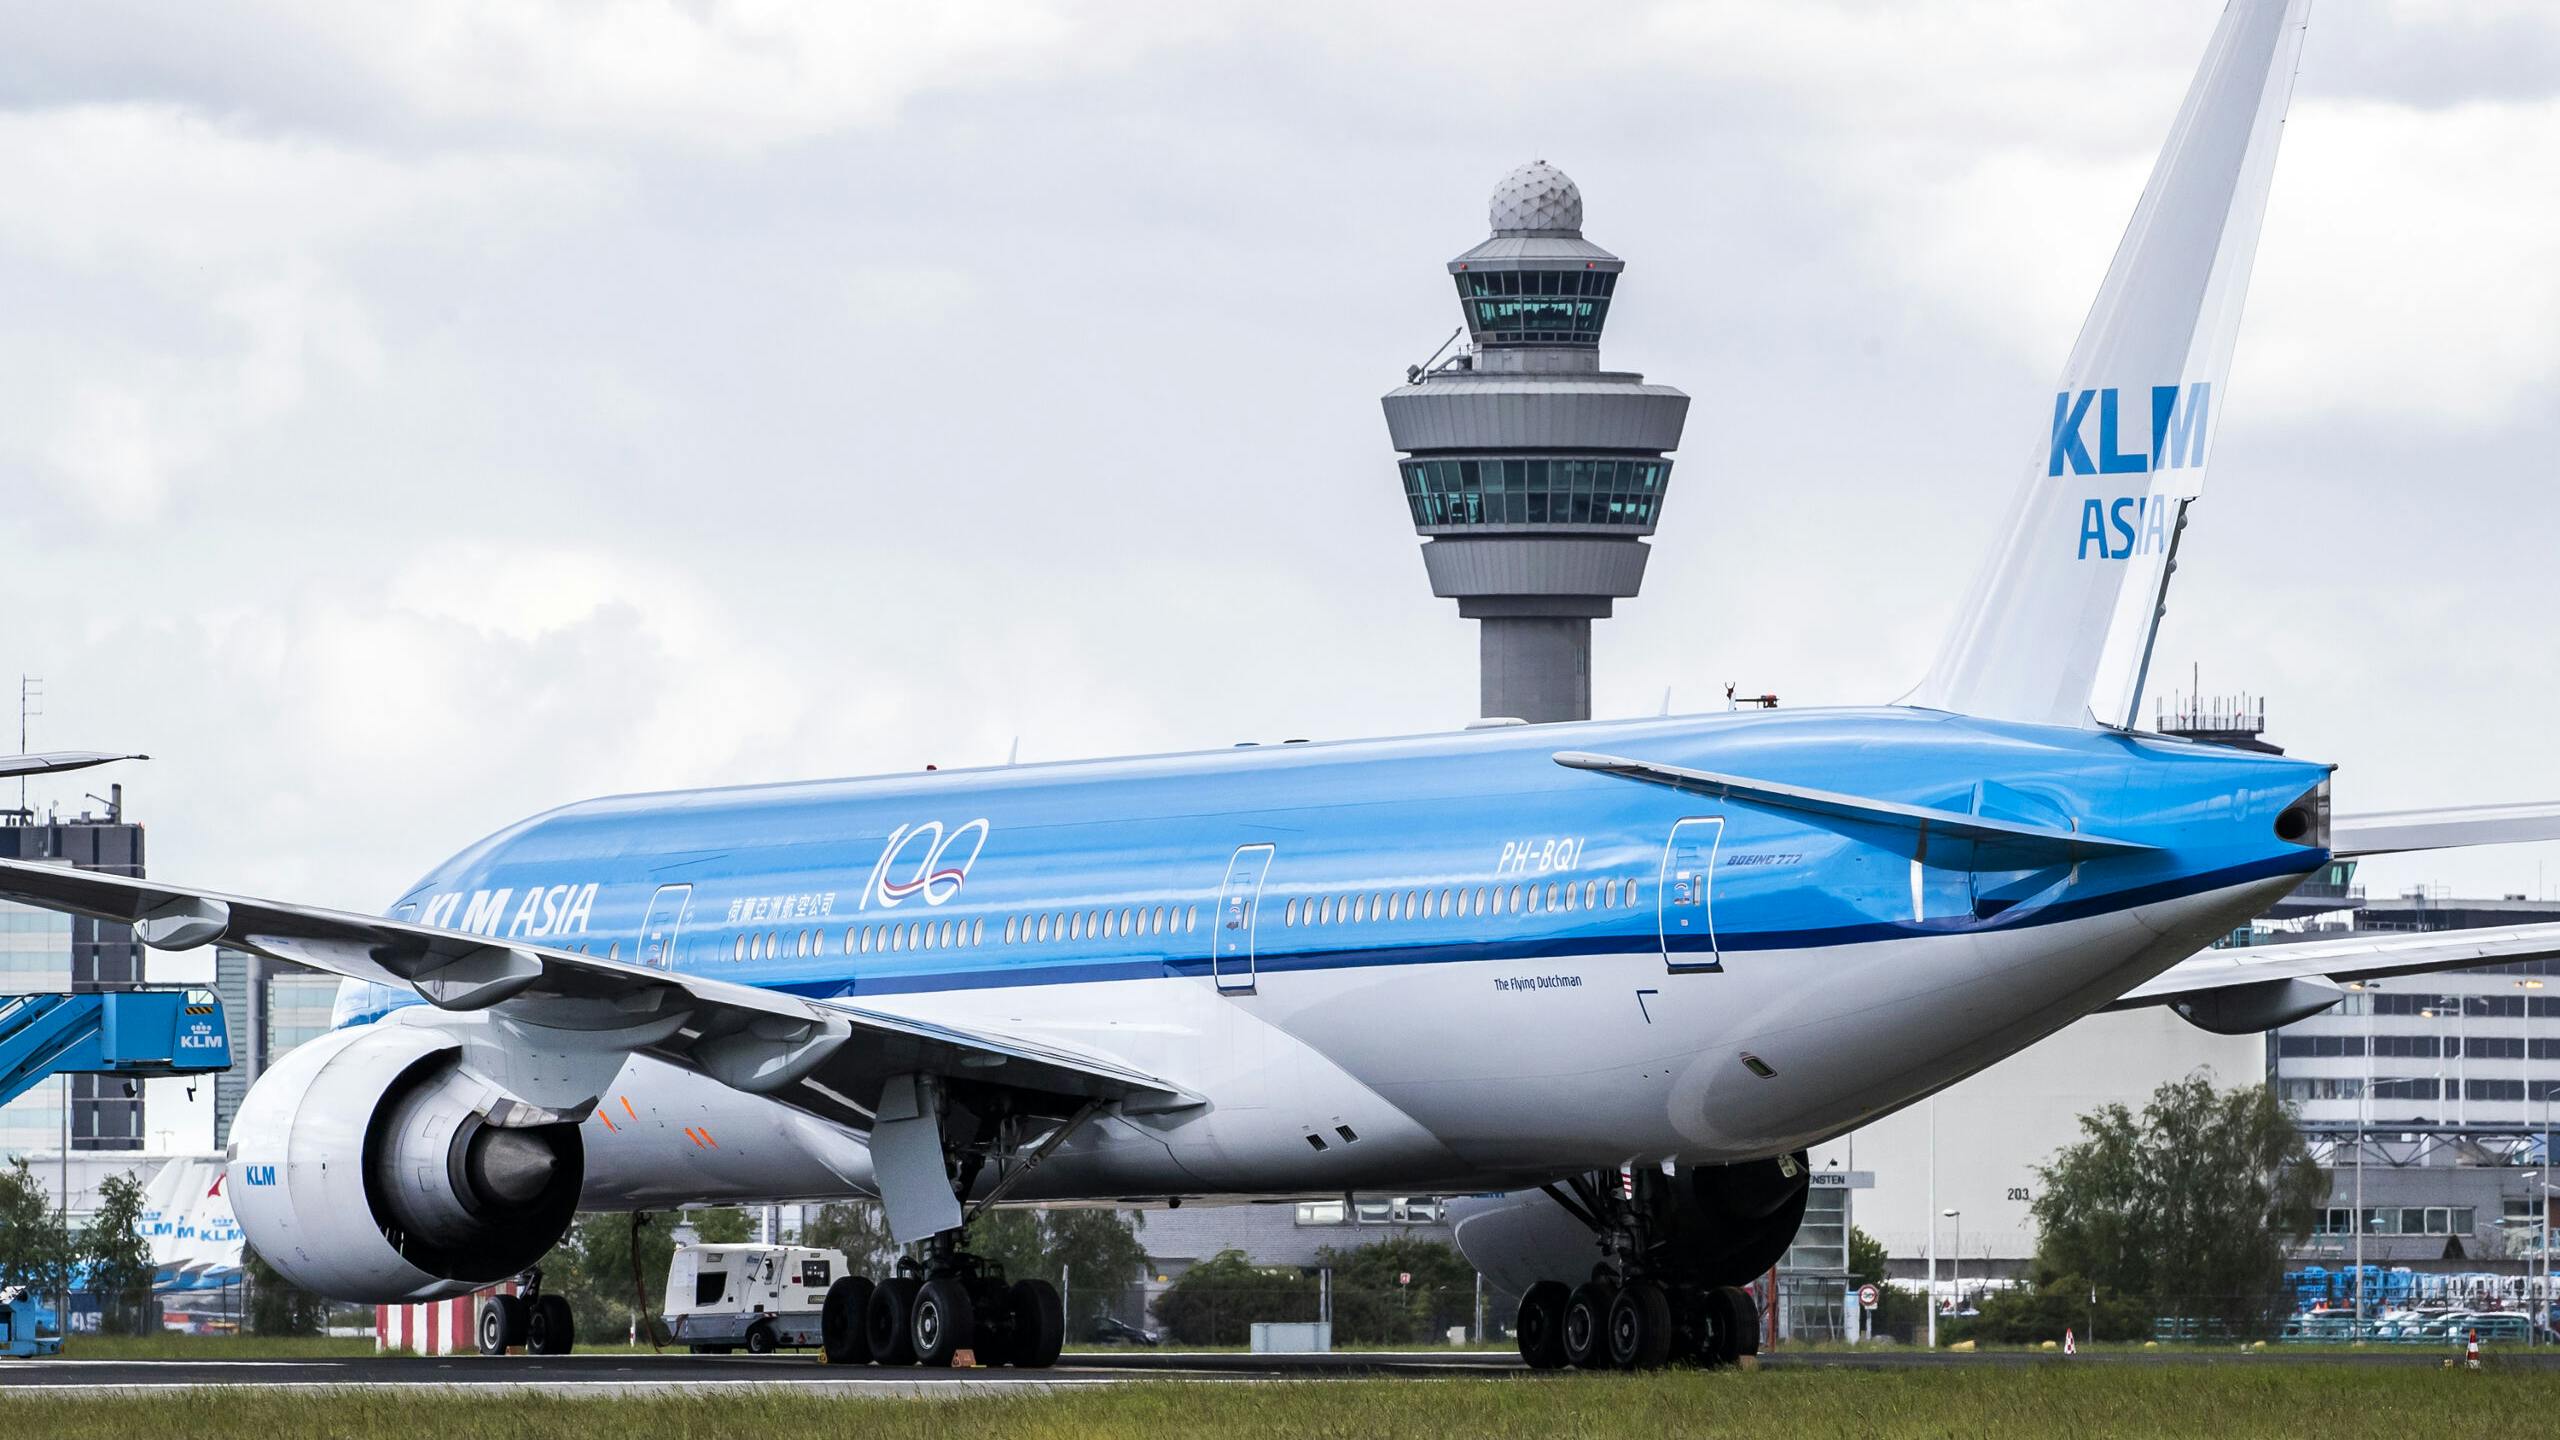 2020-05-14 09:55:18 SCHIPHOL - Toestellen van de KLM op luchthaven Schiphol. KLM voert vanwege de coronacrisis veel minder vluchten uit. ANP REMKO DE WAAL